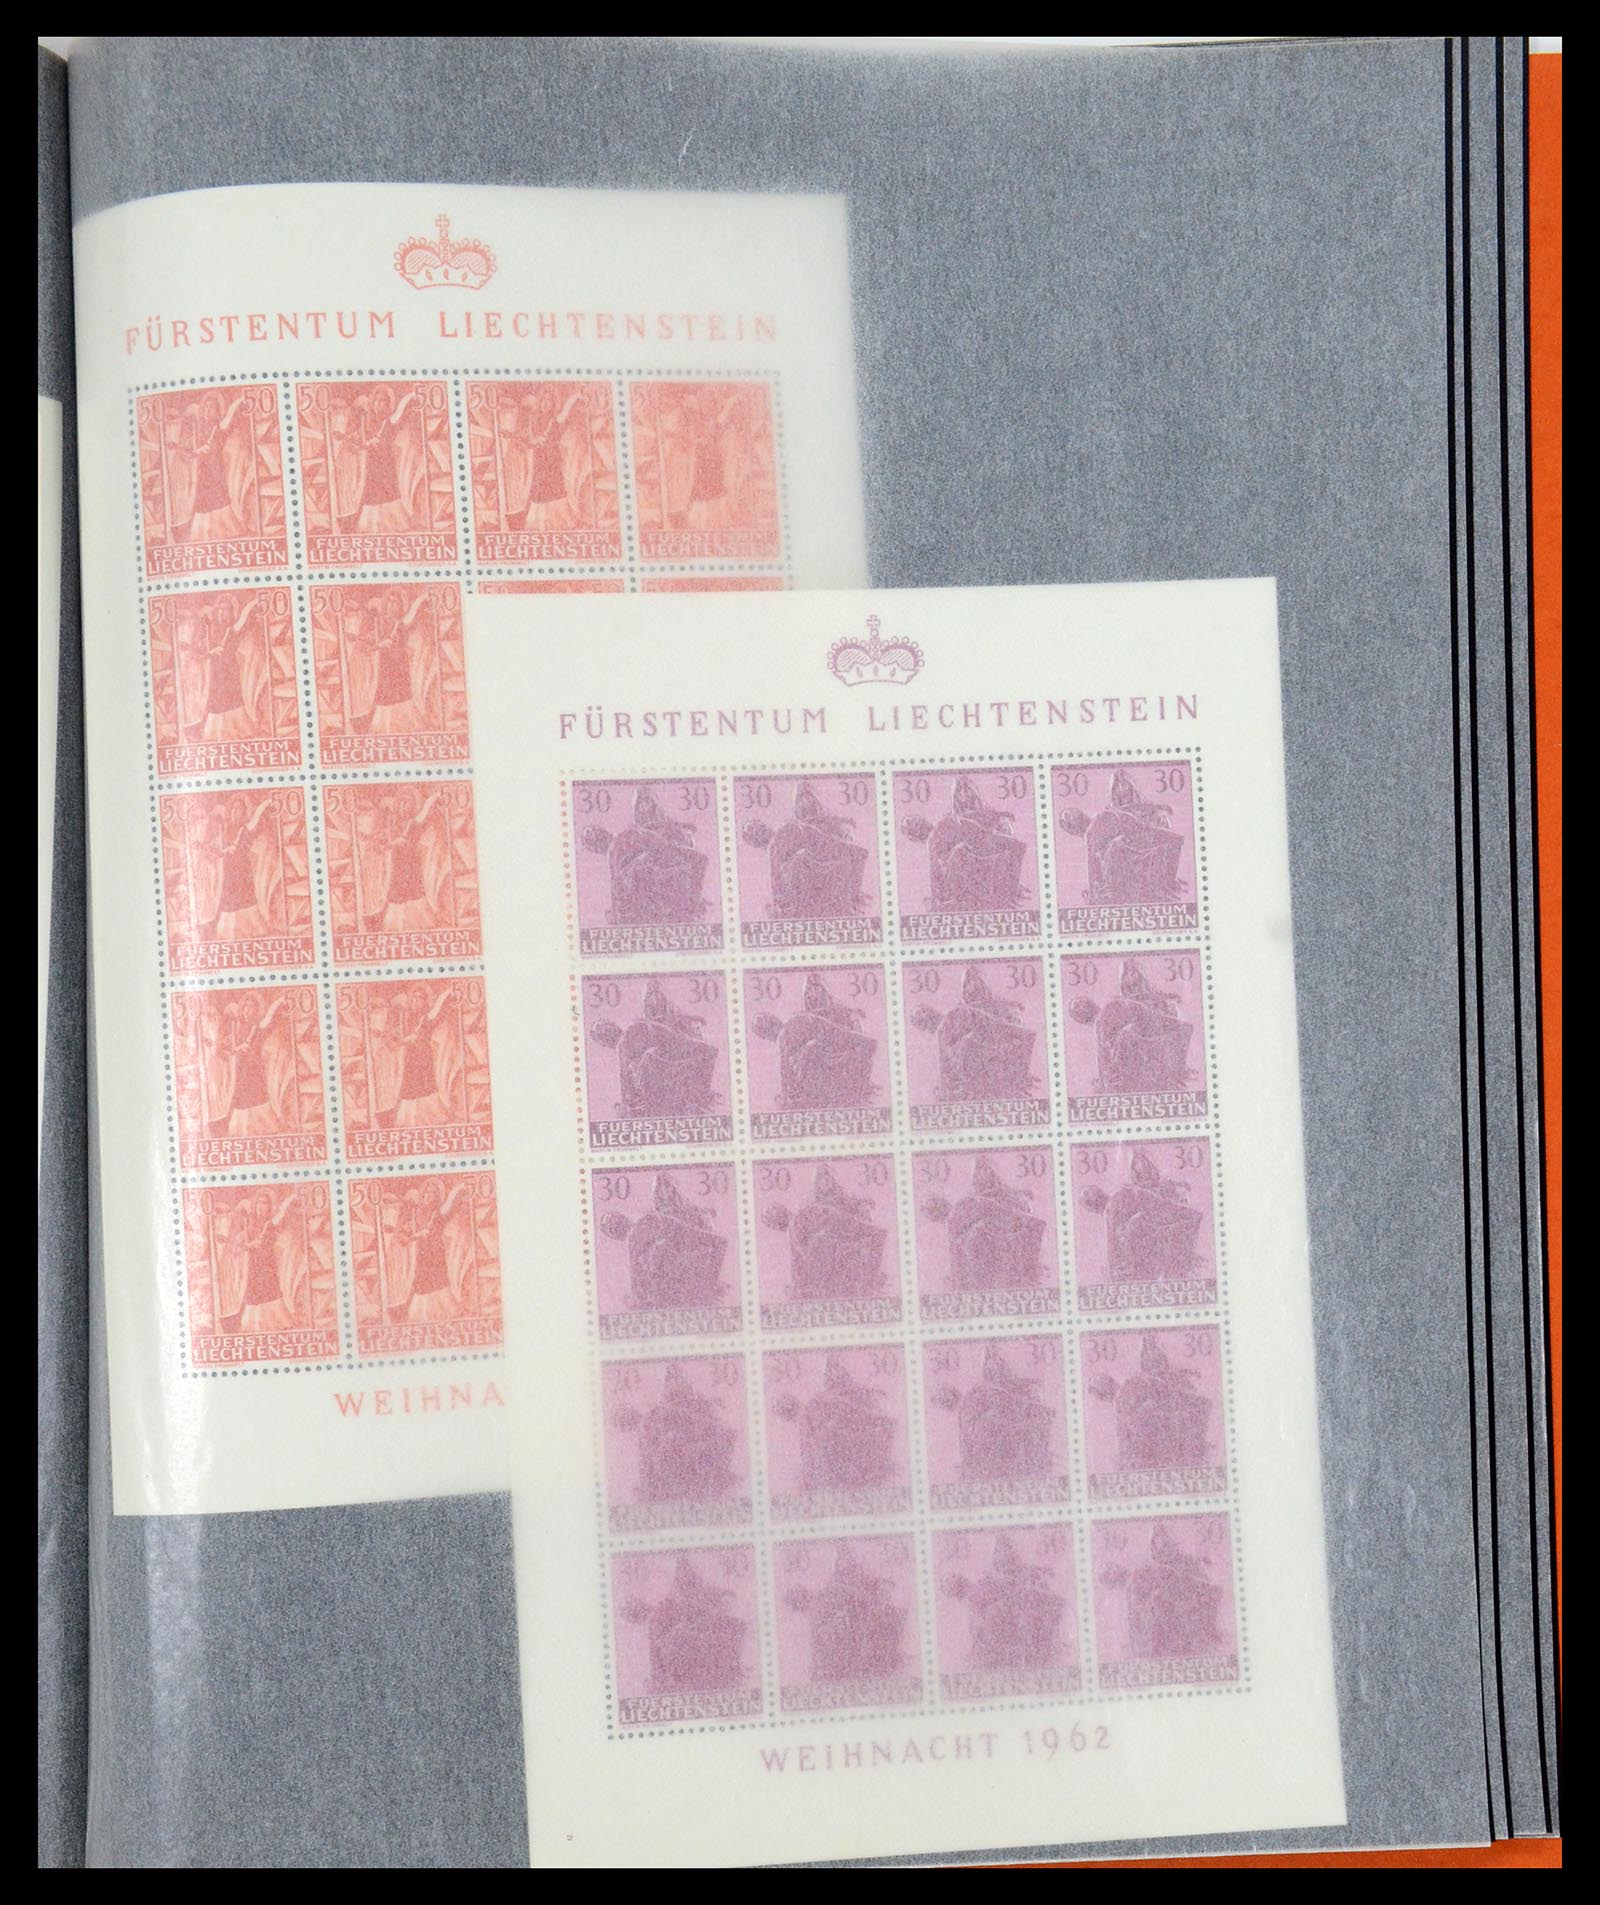 36280 204 - Stamp collection 36280 Liechtenstein souvenir sheets and sheetlets 1934-